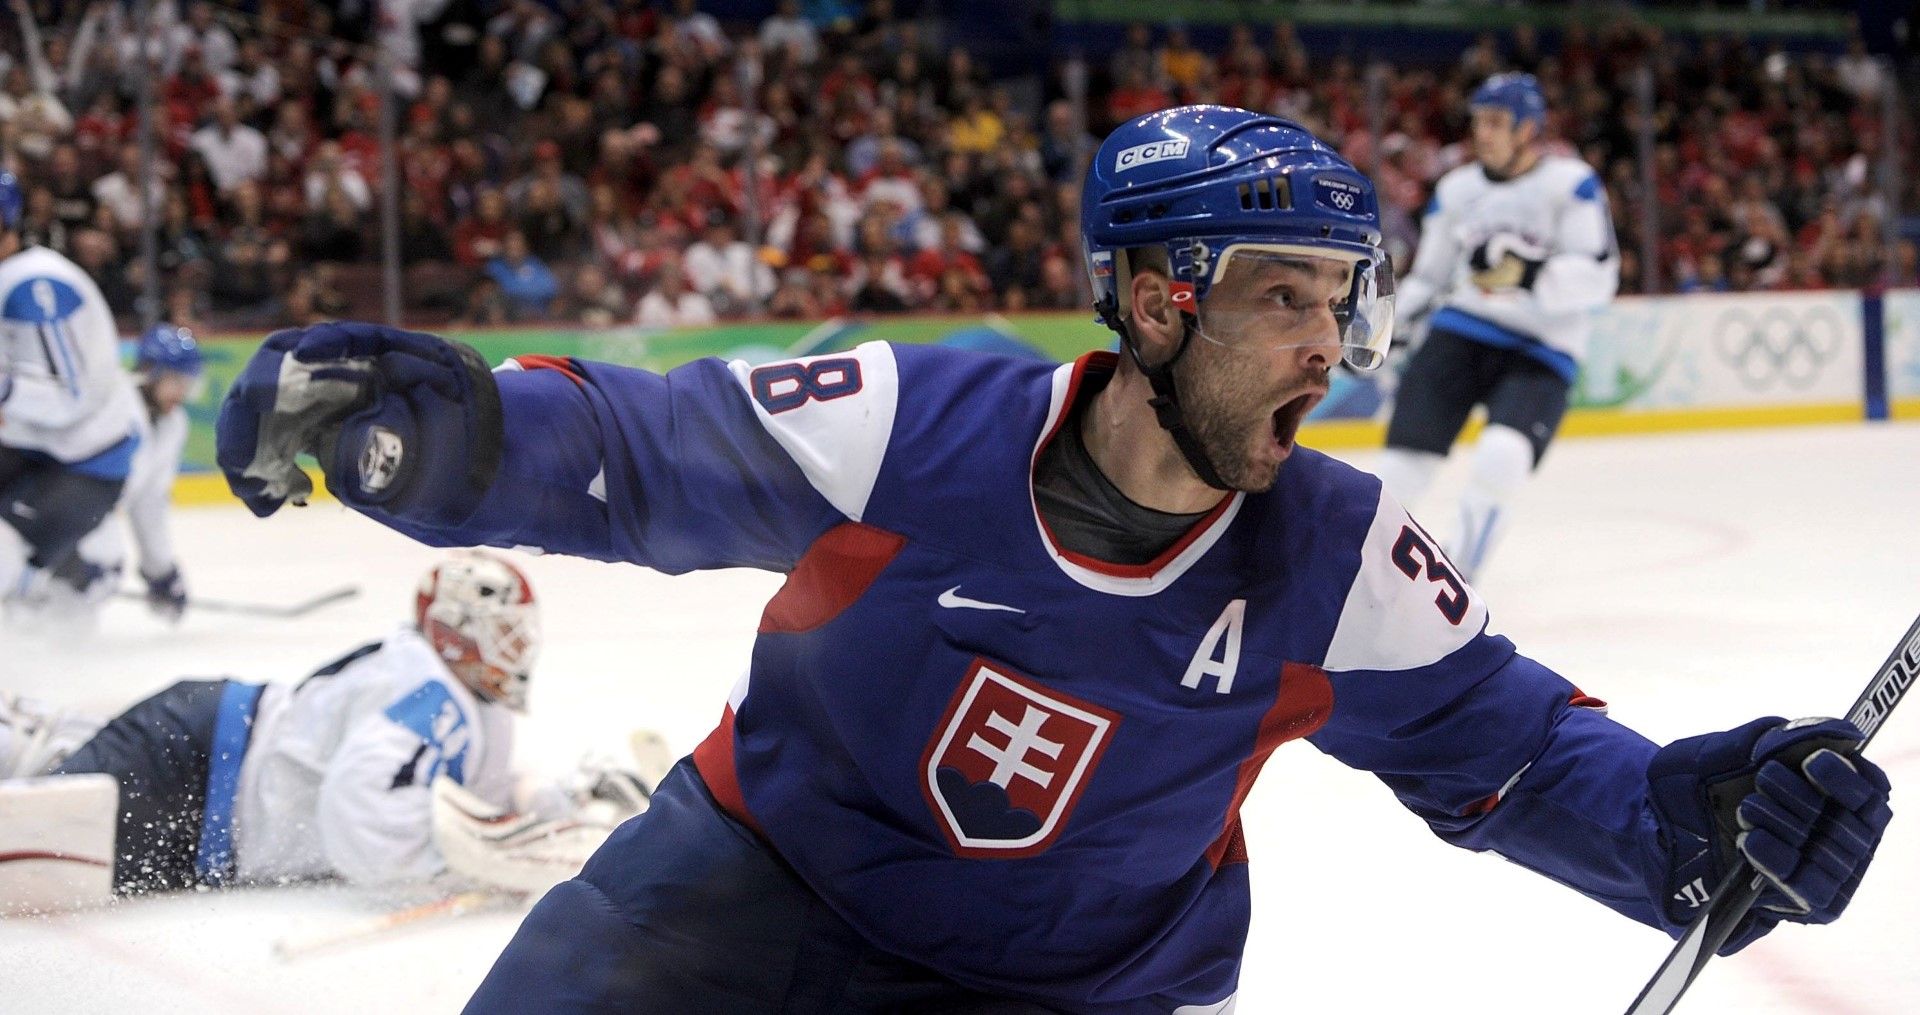 Голямата звезда на този тим е словакът Павел Демитра. Той   прекарва 16 години в американската НХЛ, където има над 300   попадения. Представлява Словакия на 11 големи първенства, а   новината за смъртта му разтърсва цялата страна. По това   време той е най-голямата звезда в родината си, където хокеят   е спорт №1.